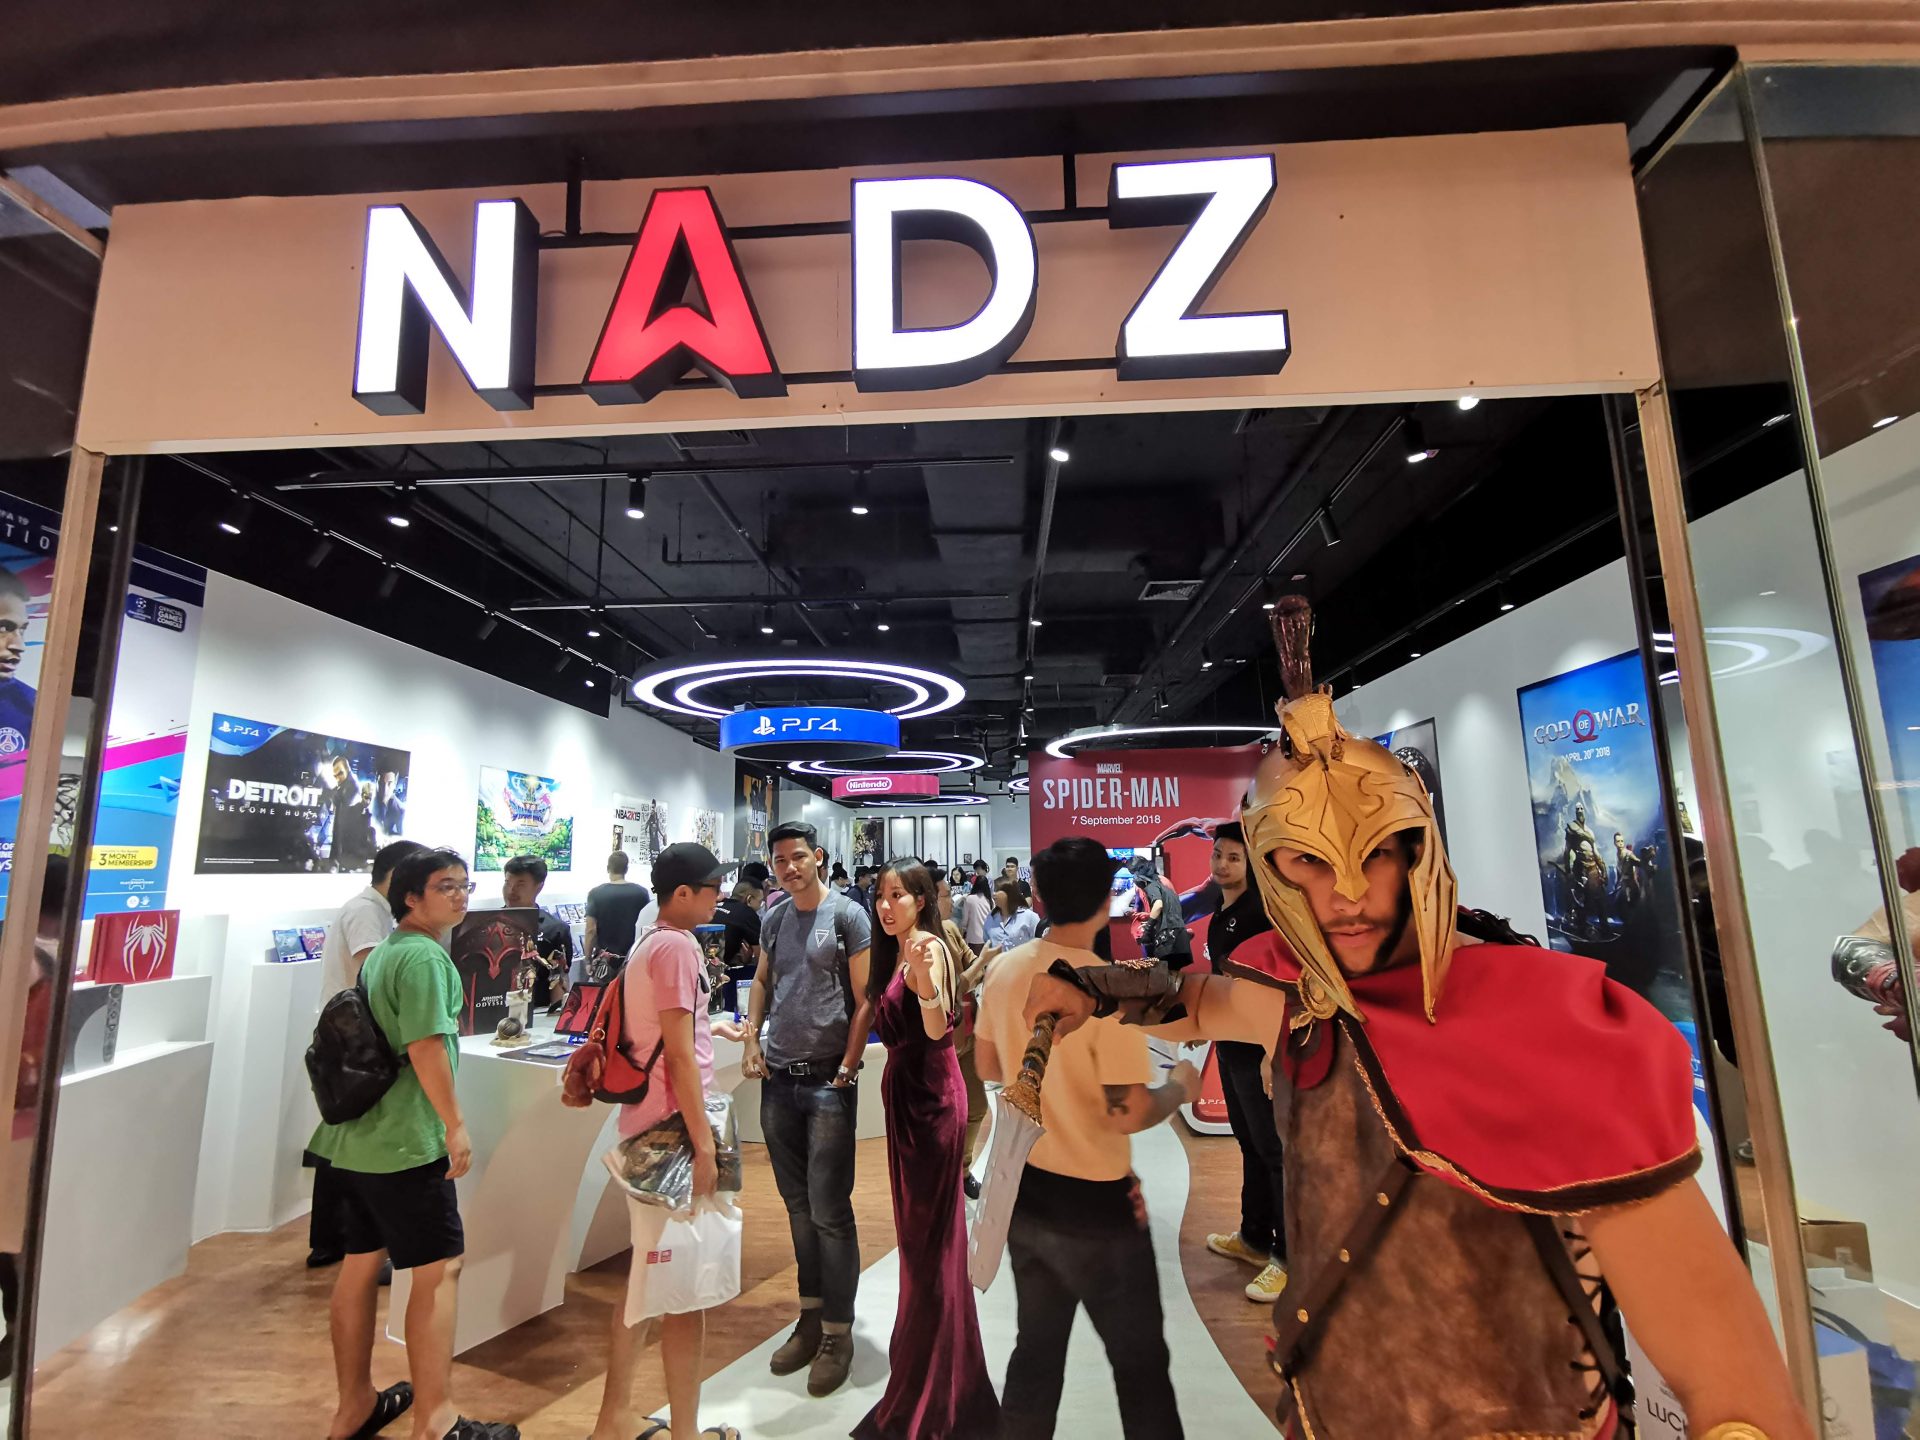 พาทัวร์ร้านเกม NADZ Project สาขาใหม่ที่ Central World ทั้งขาย ทั้งโชว์ ทั้งให้ทดลอง